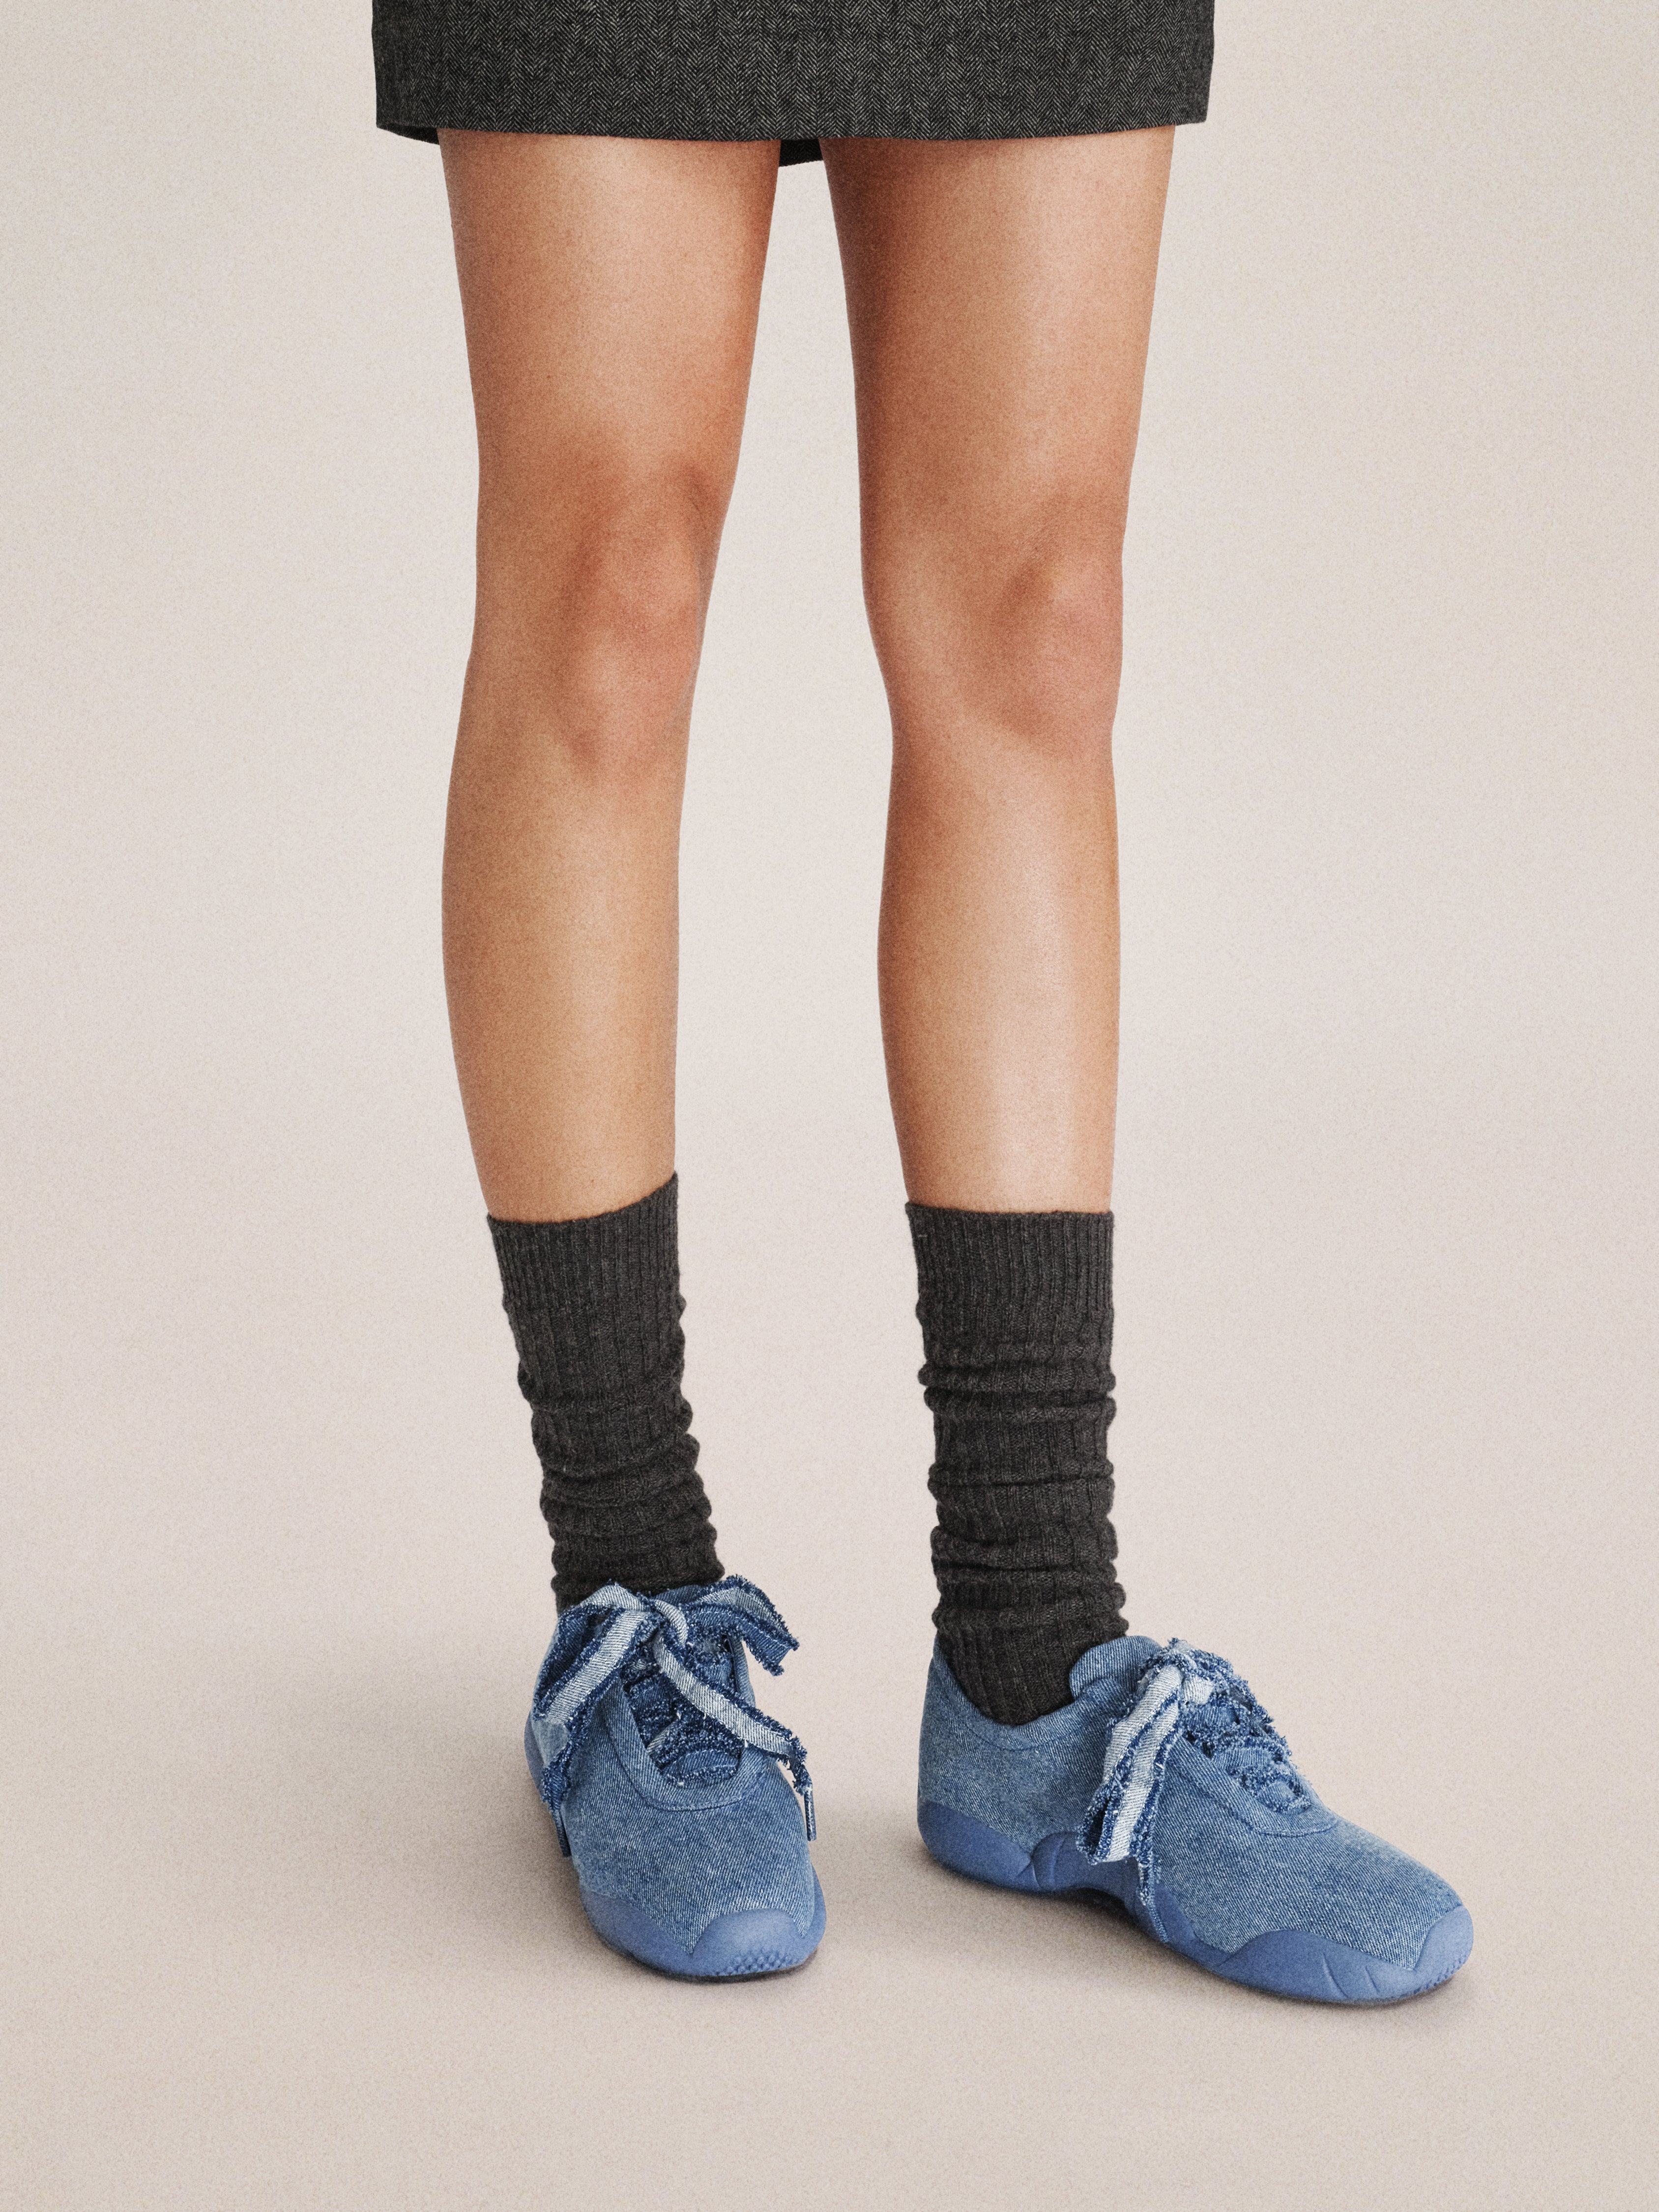 Flavia Ballerina Sneakers - Blu